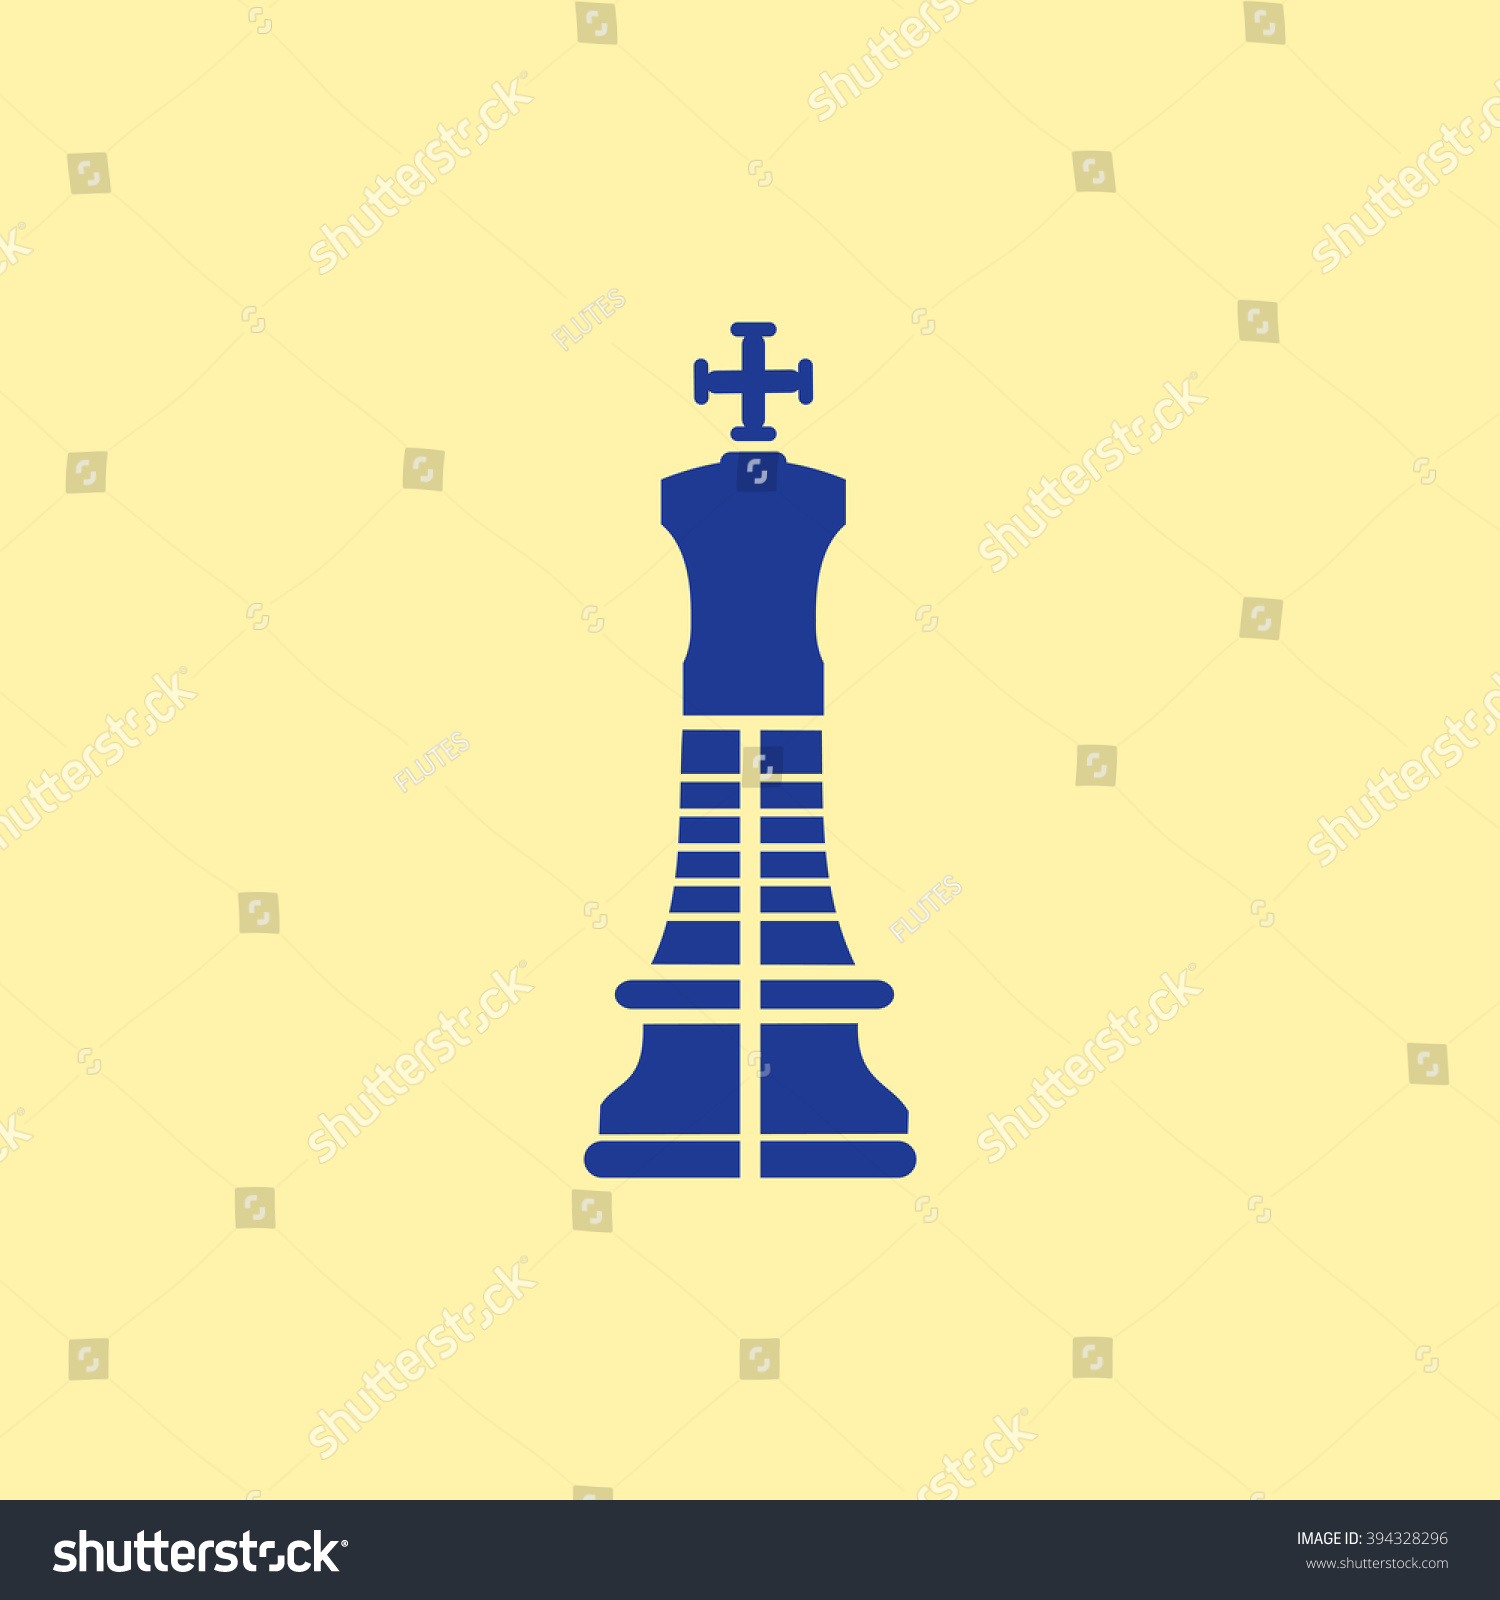 Chess King Icon. #394328296